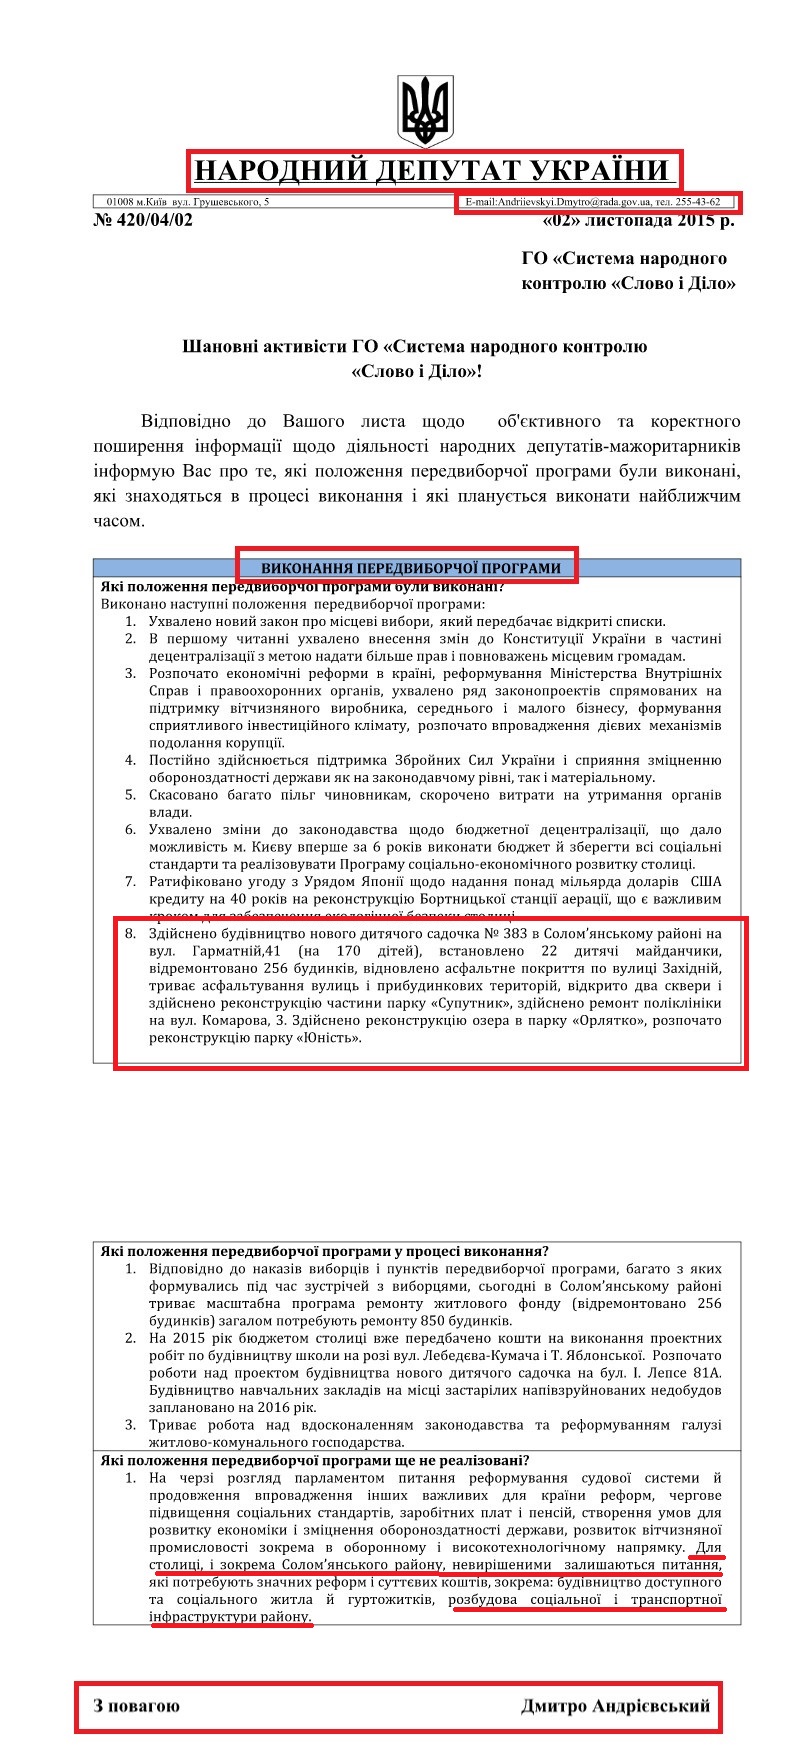 Звіт народного депутата України Дмитра Андрієвського про виконану роботу